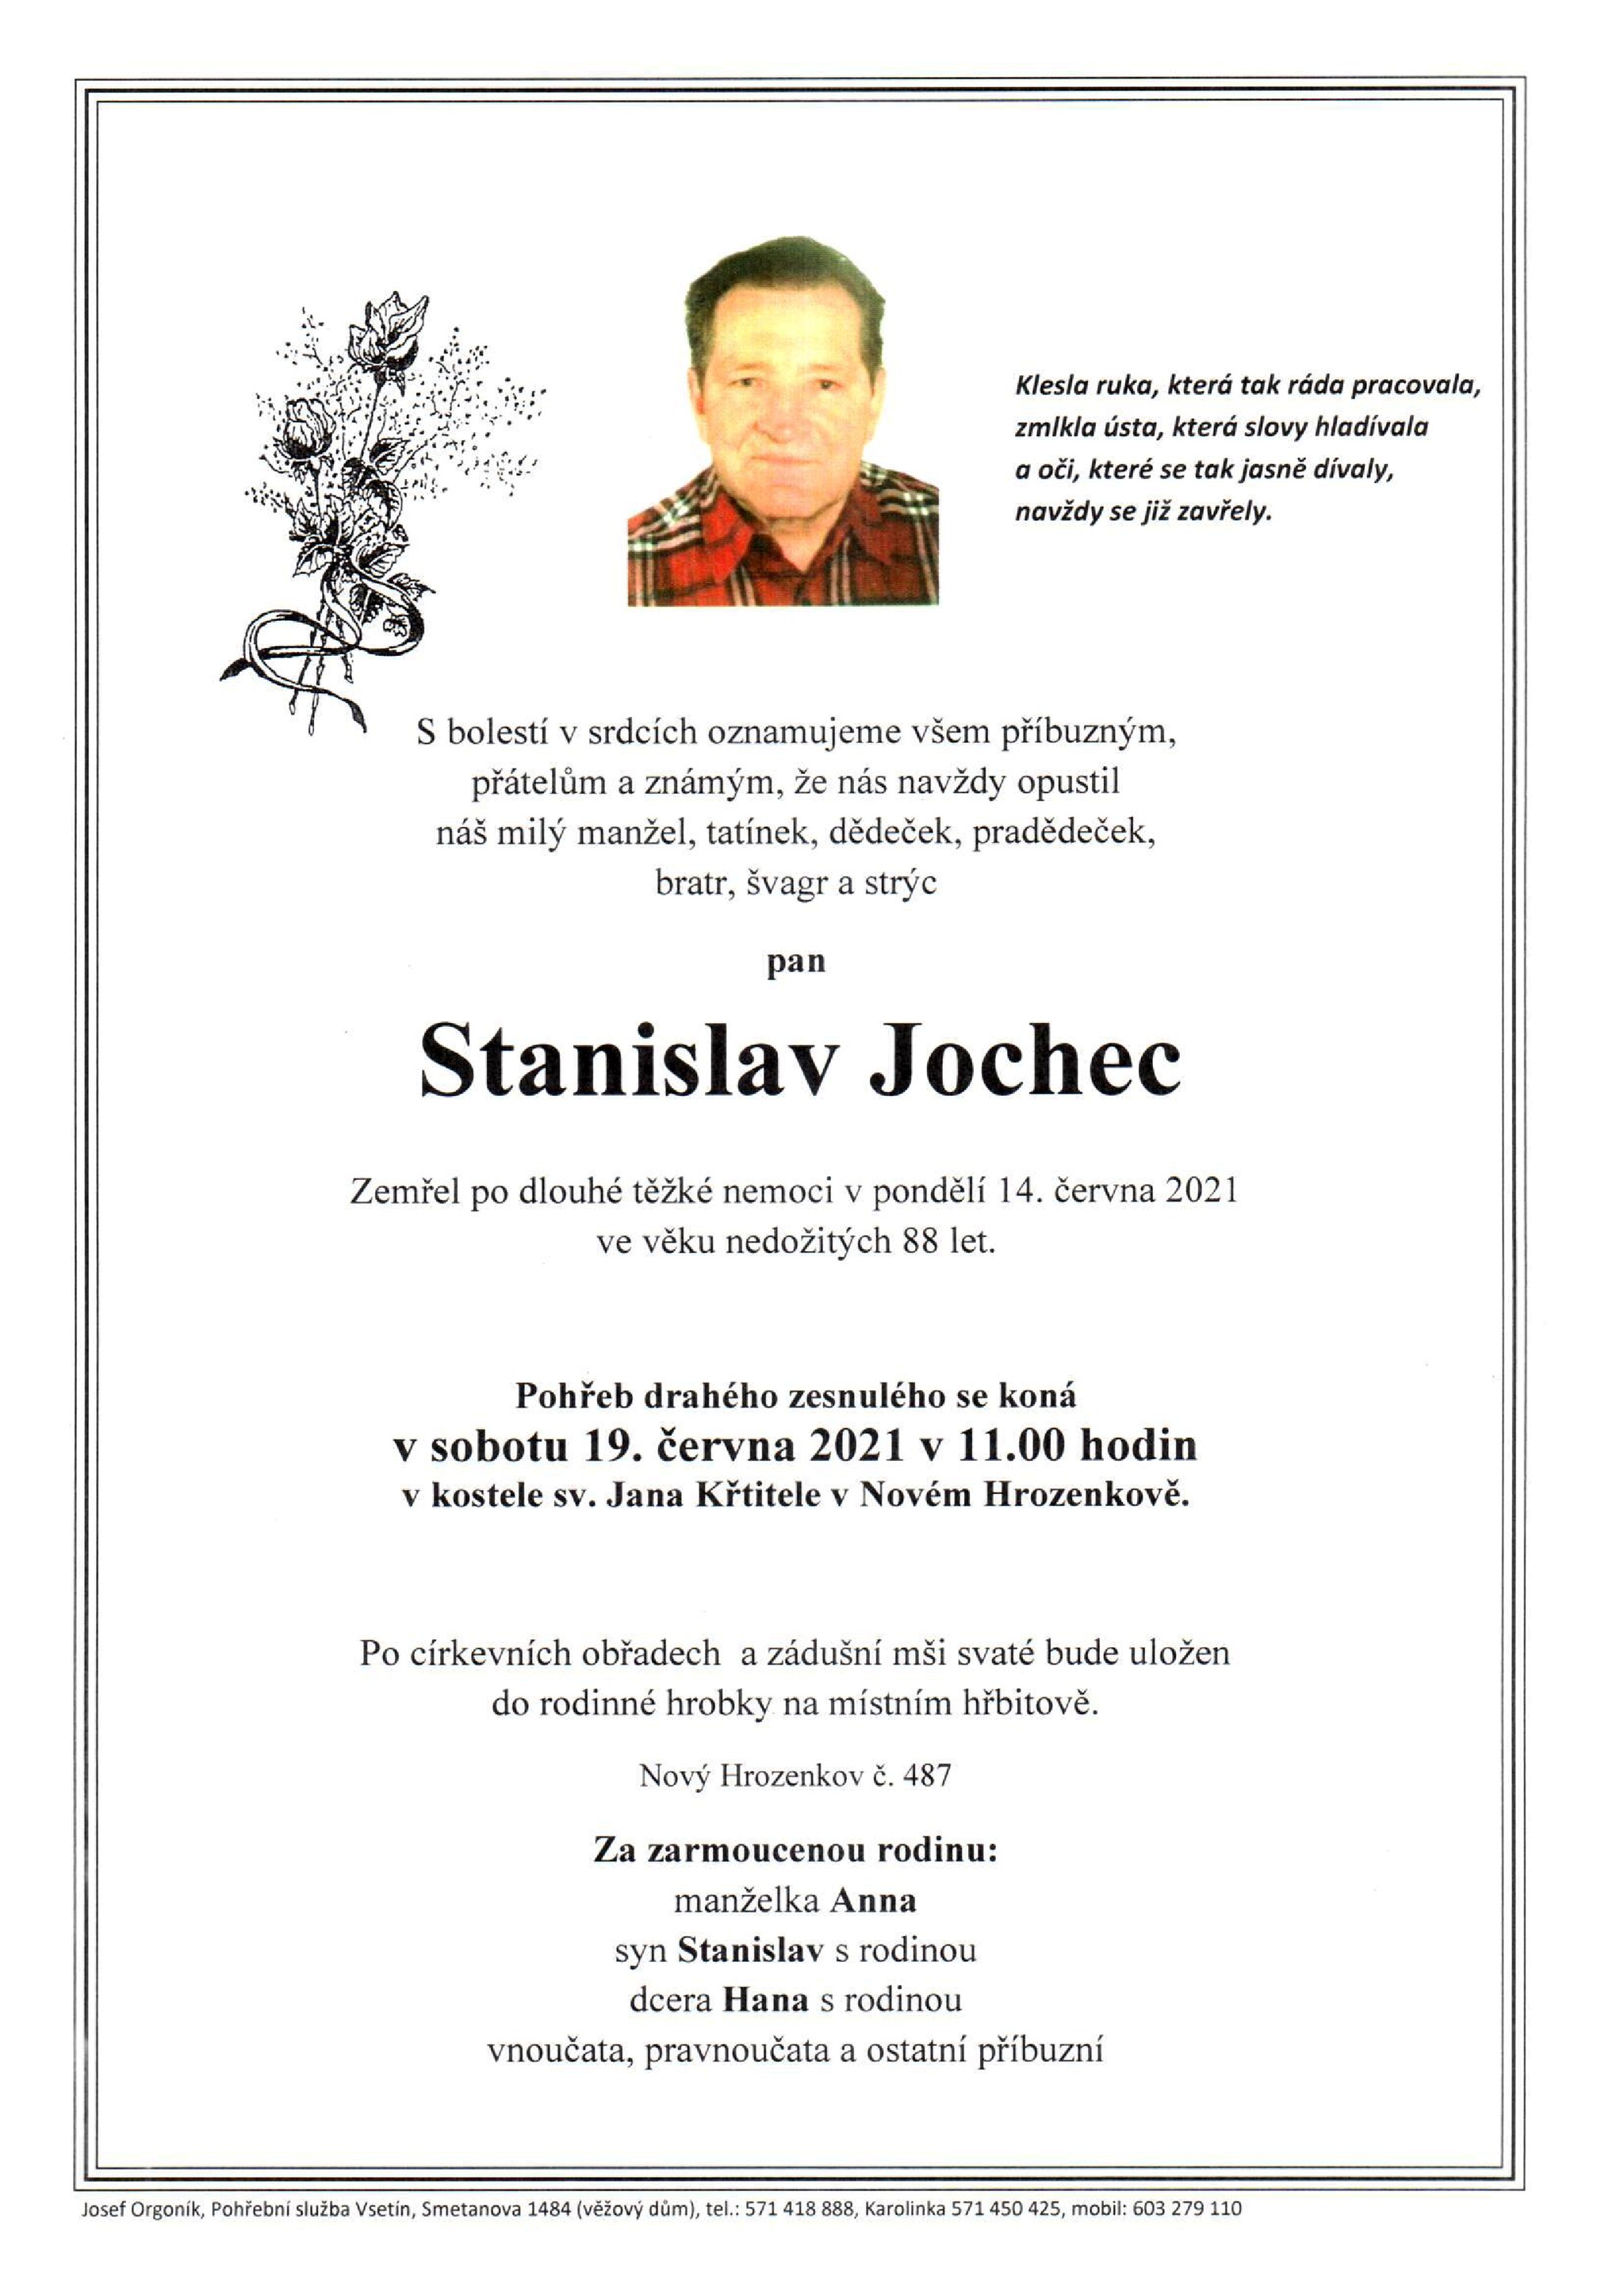 Stanislav Jochec